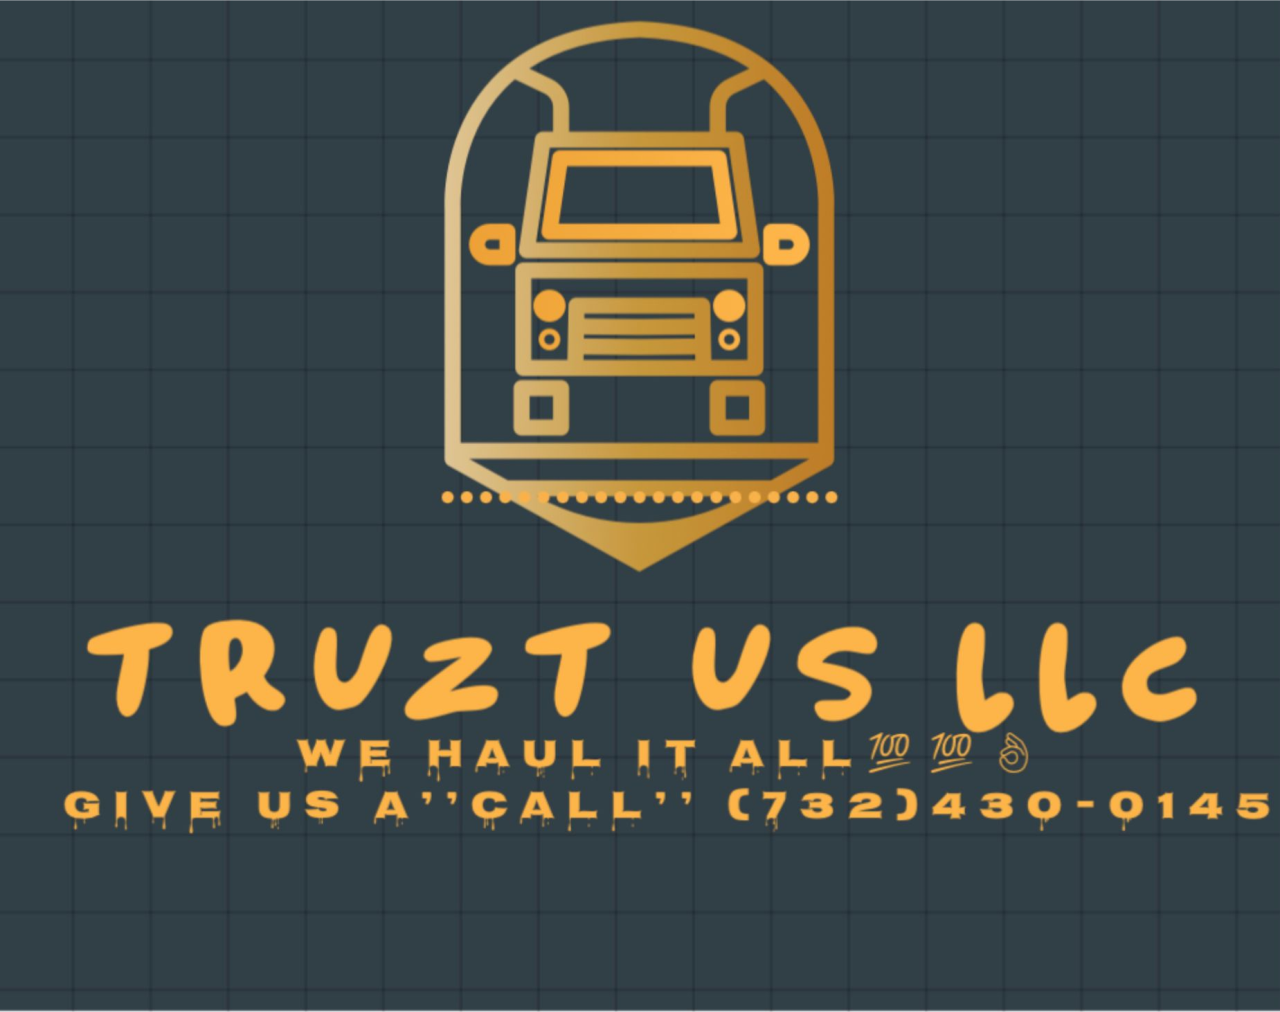 TRUZT US LLC's web page